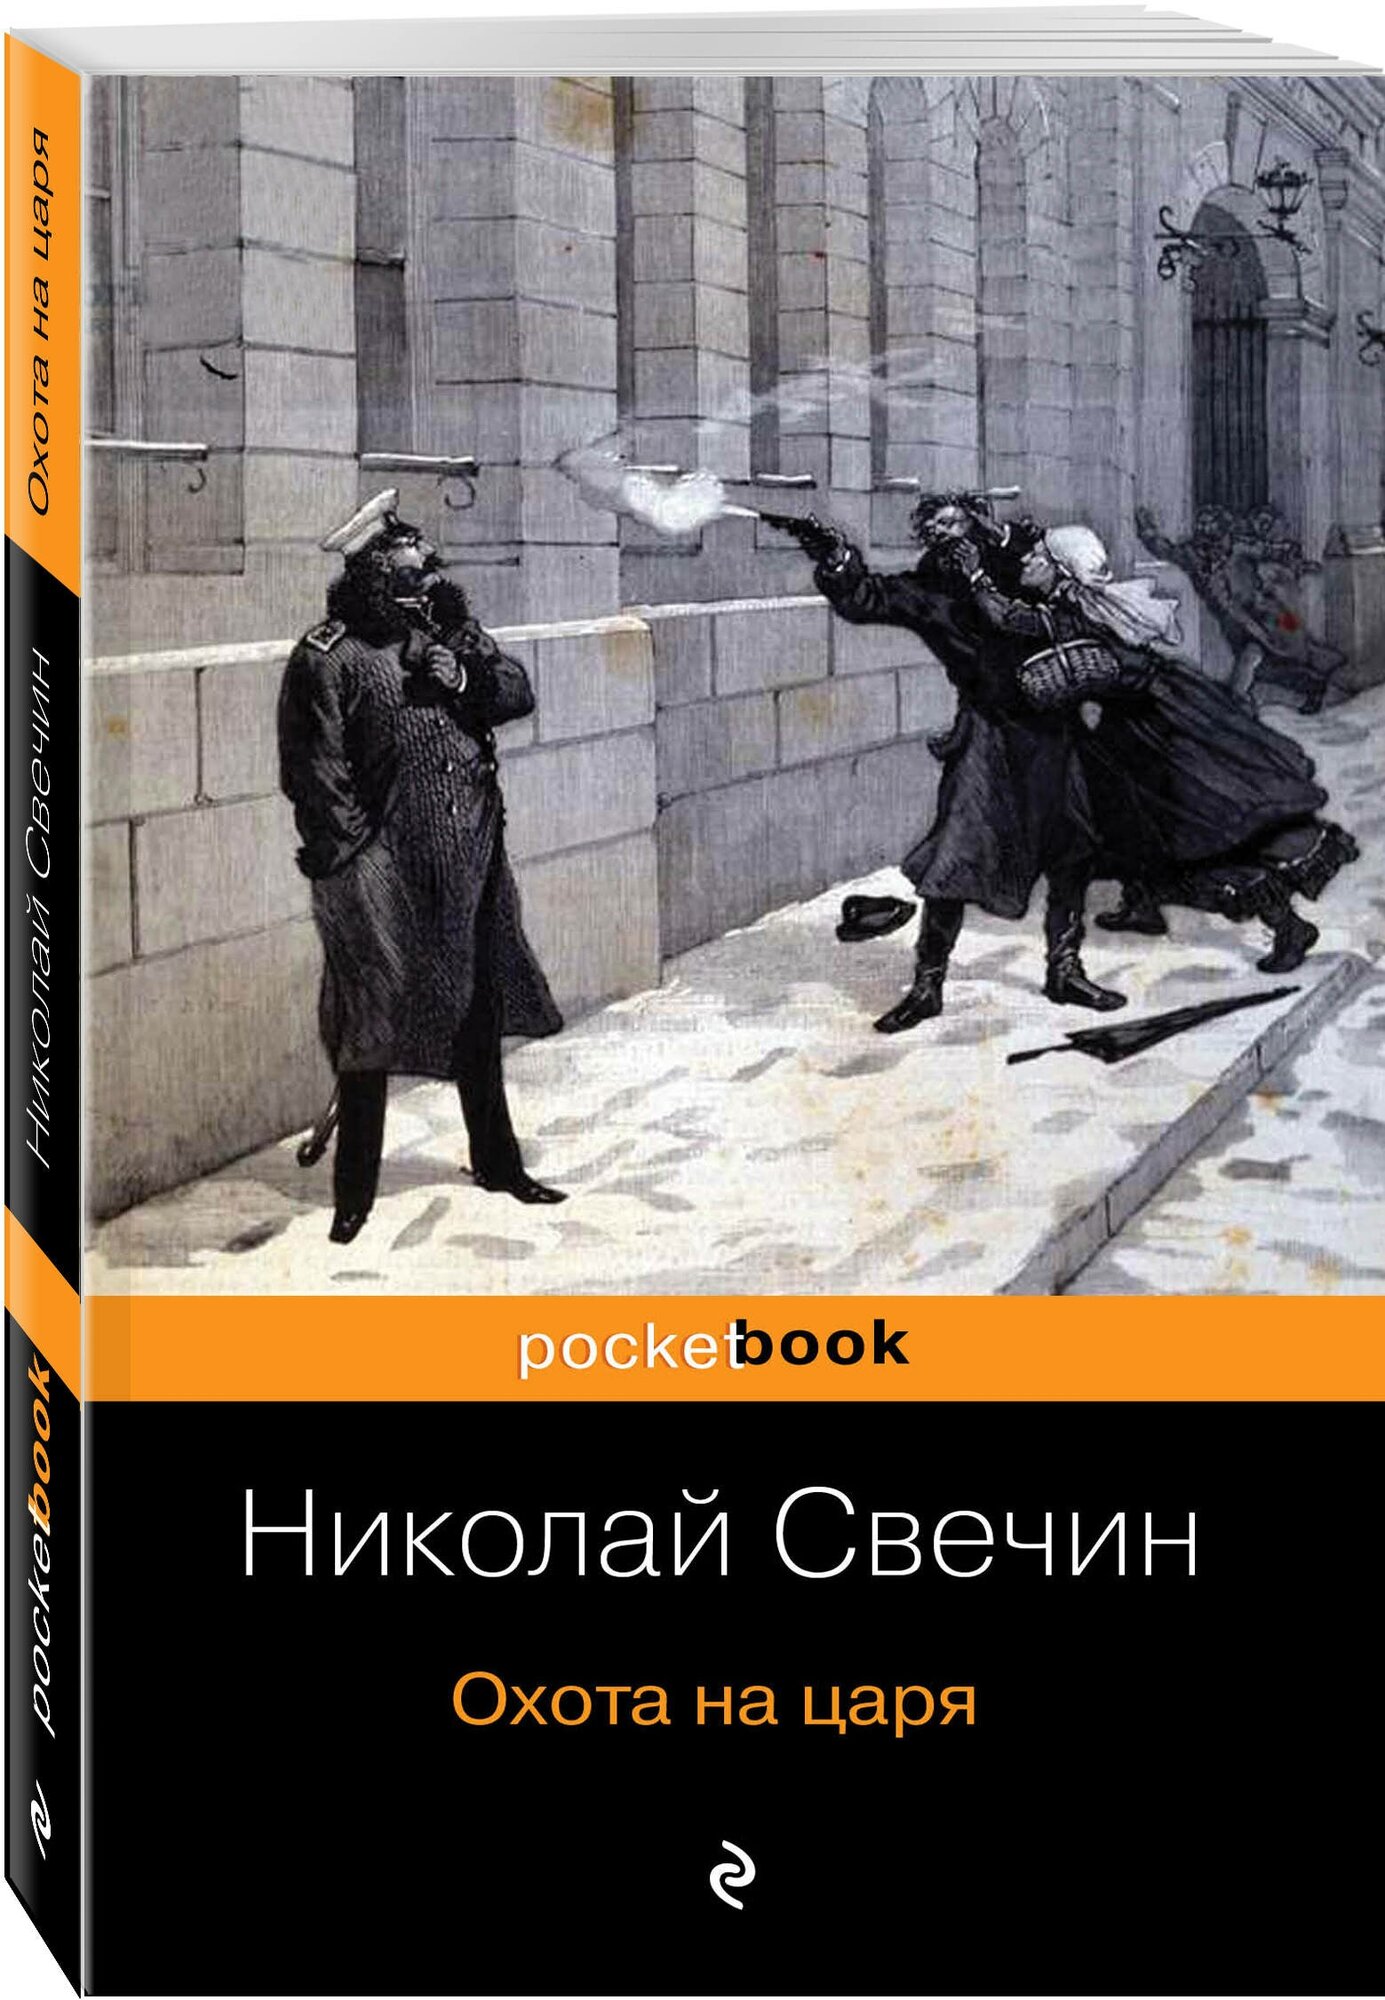 Охота на царя Книга Свечин Николай 16+